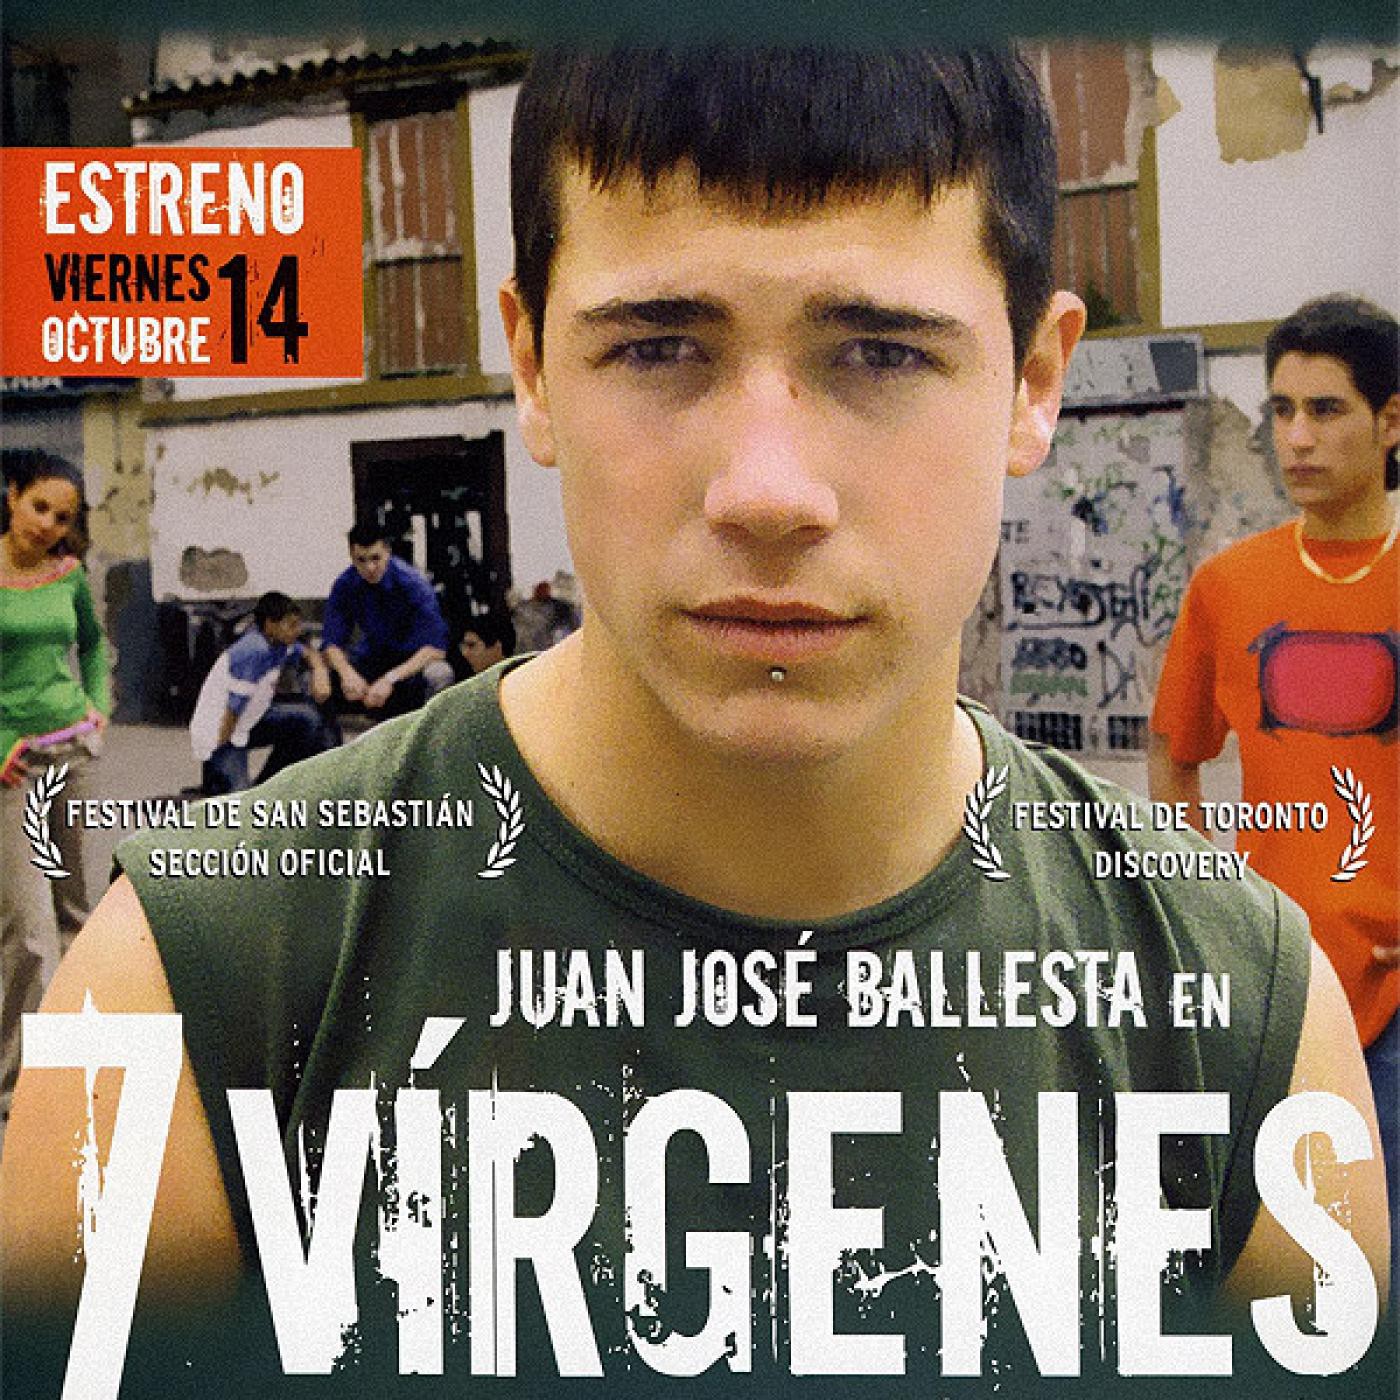 7 Vírgenes (Drama social. Cine quinqui 2005) en Escuchando Peliculas en